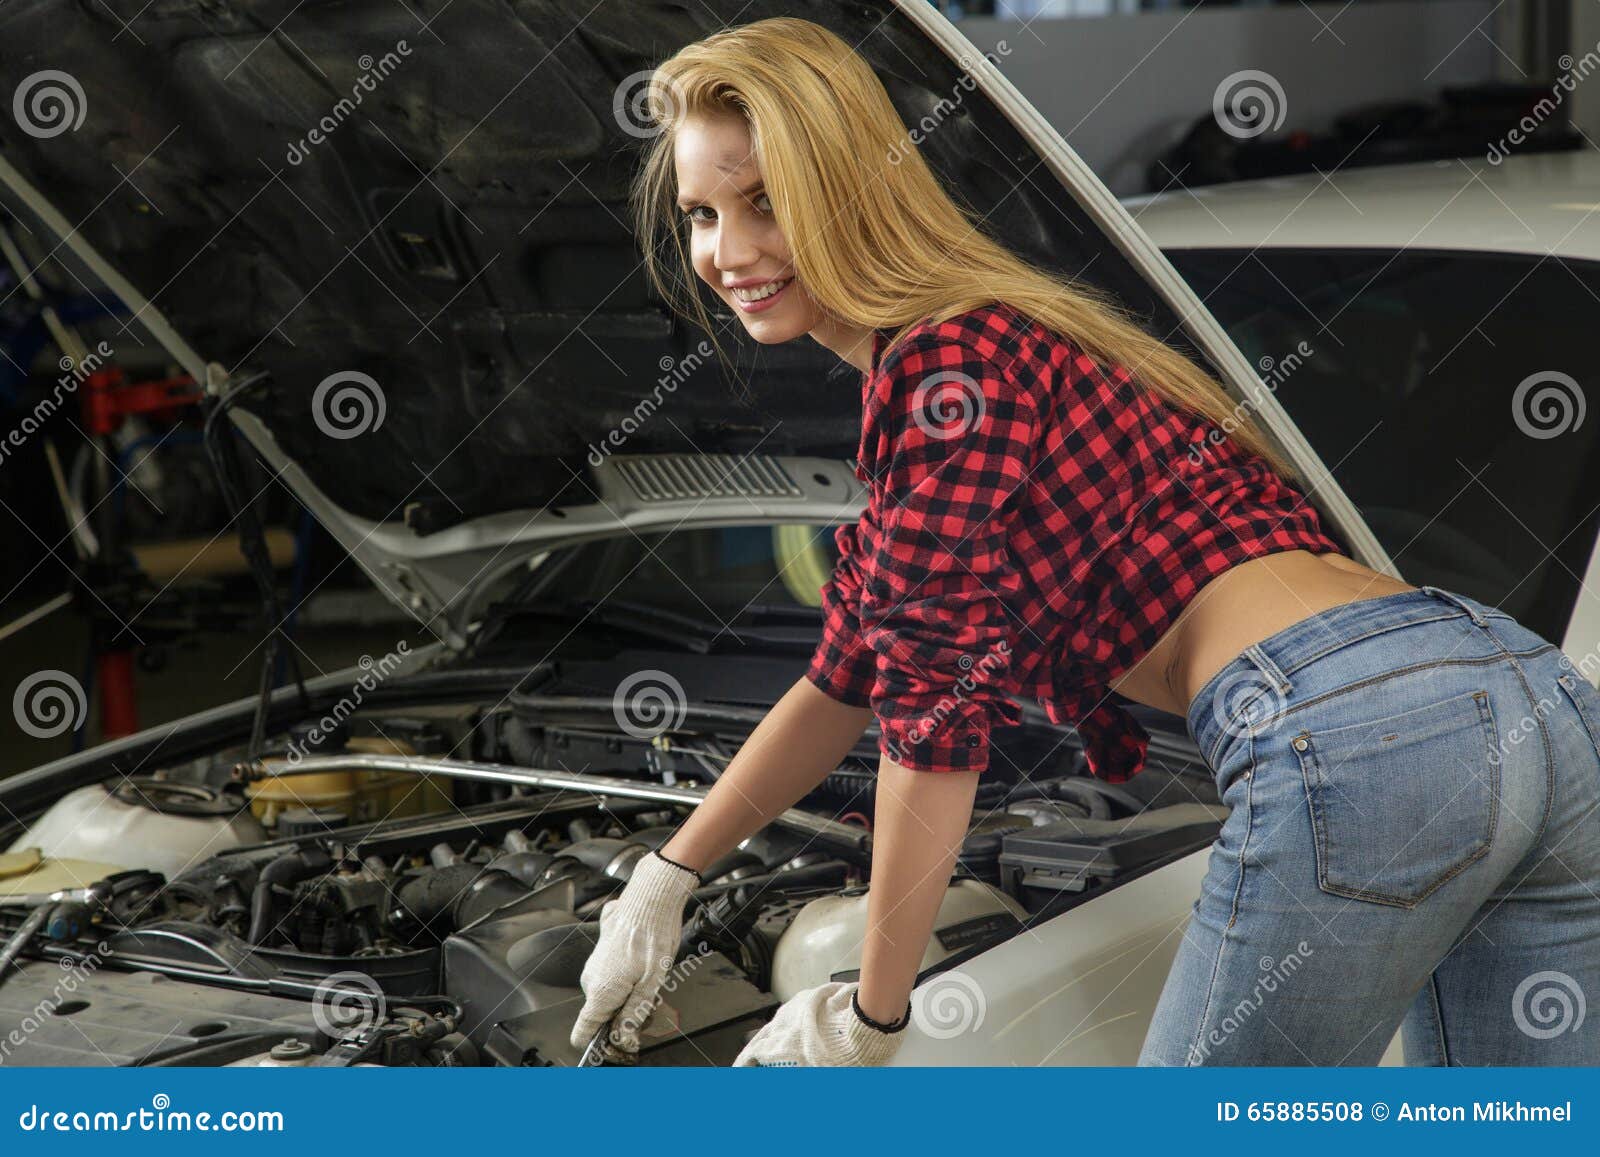 Sweetie fox чинит машину. Девушка чинит машину. Девушка механик. Девушка ремонтирует авто. Девушка автослесарь.